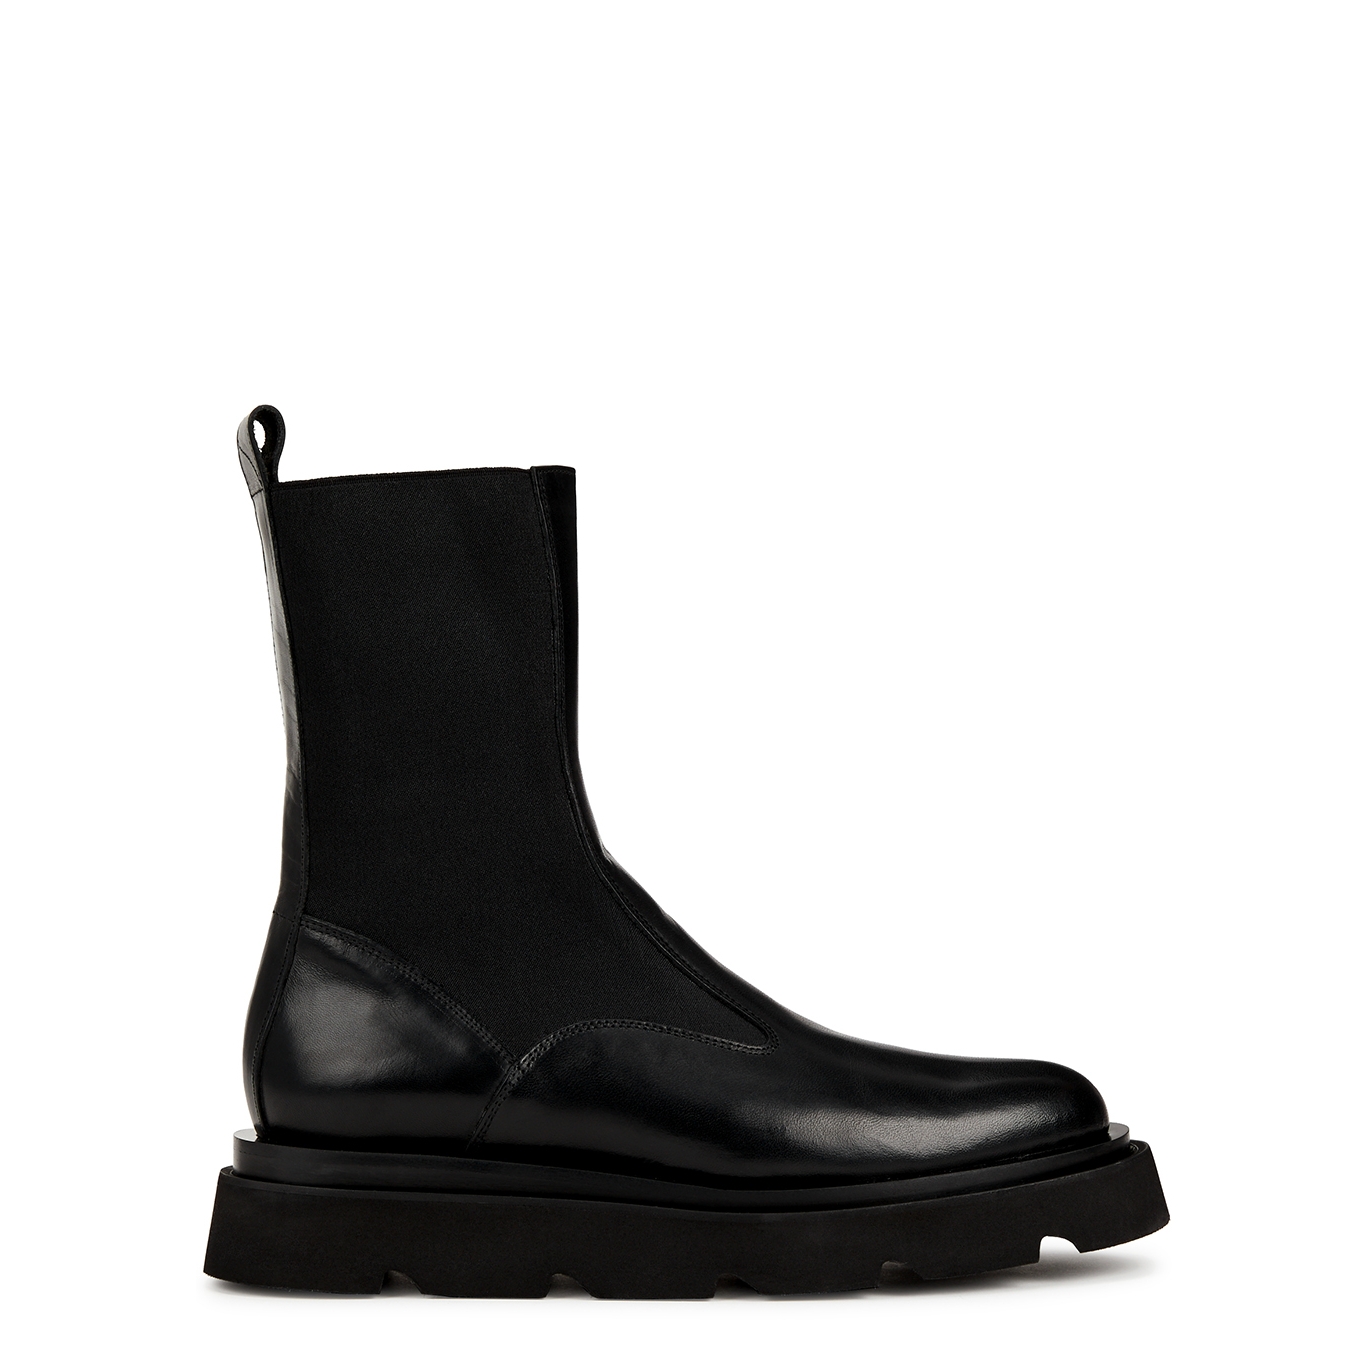 Atp Atelier Moncalieri 50 Leather Chelsea Boots - Black - 4